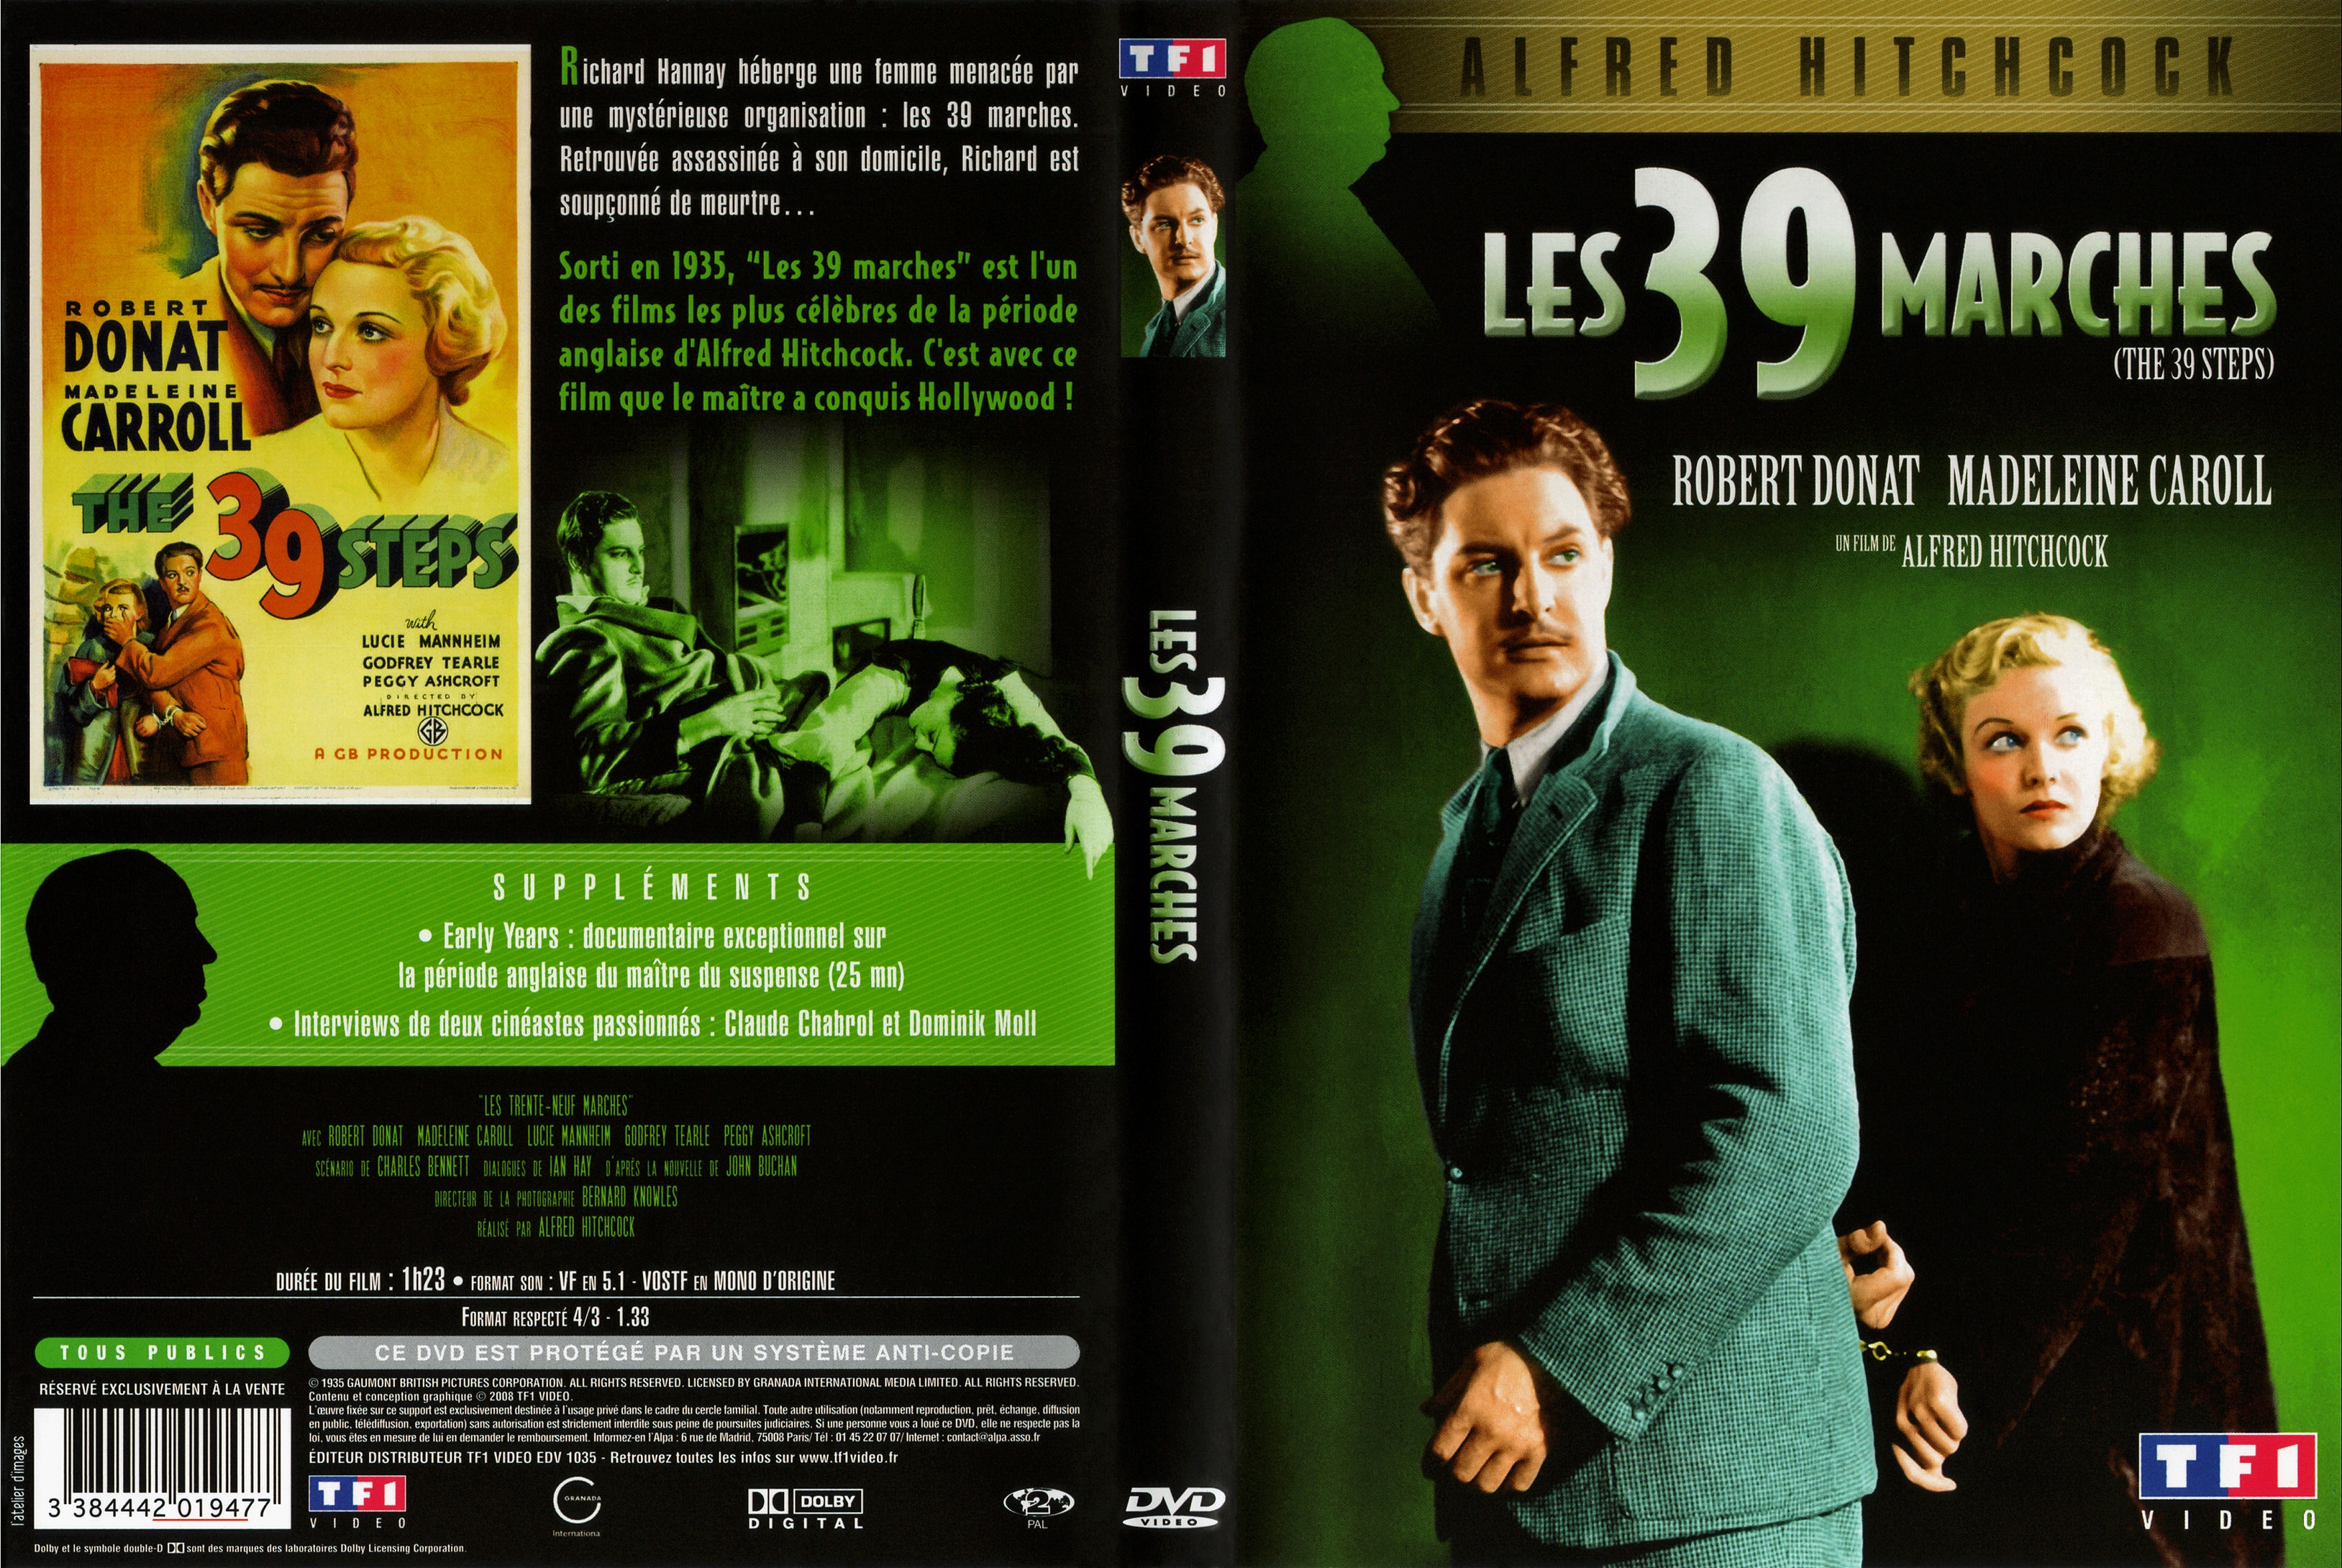 Jaquette DVD Les 39 marches v2